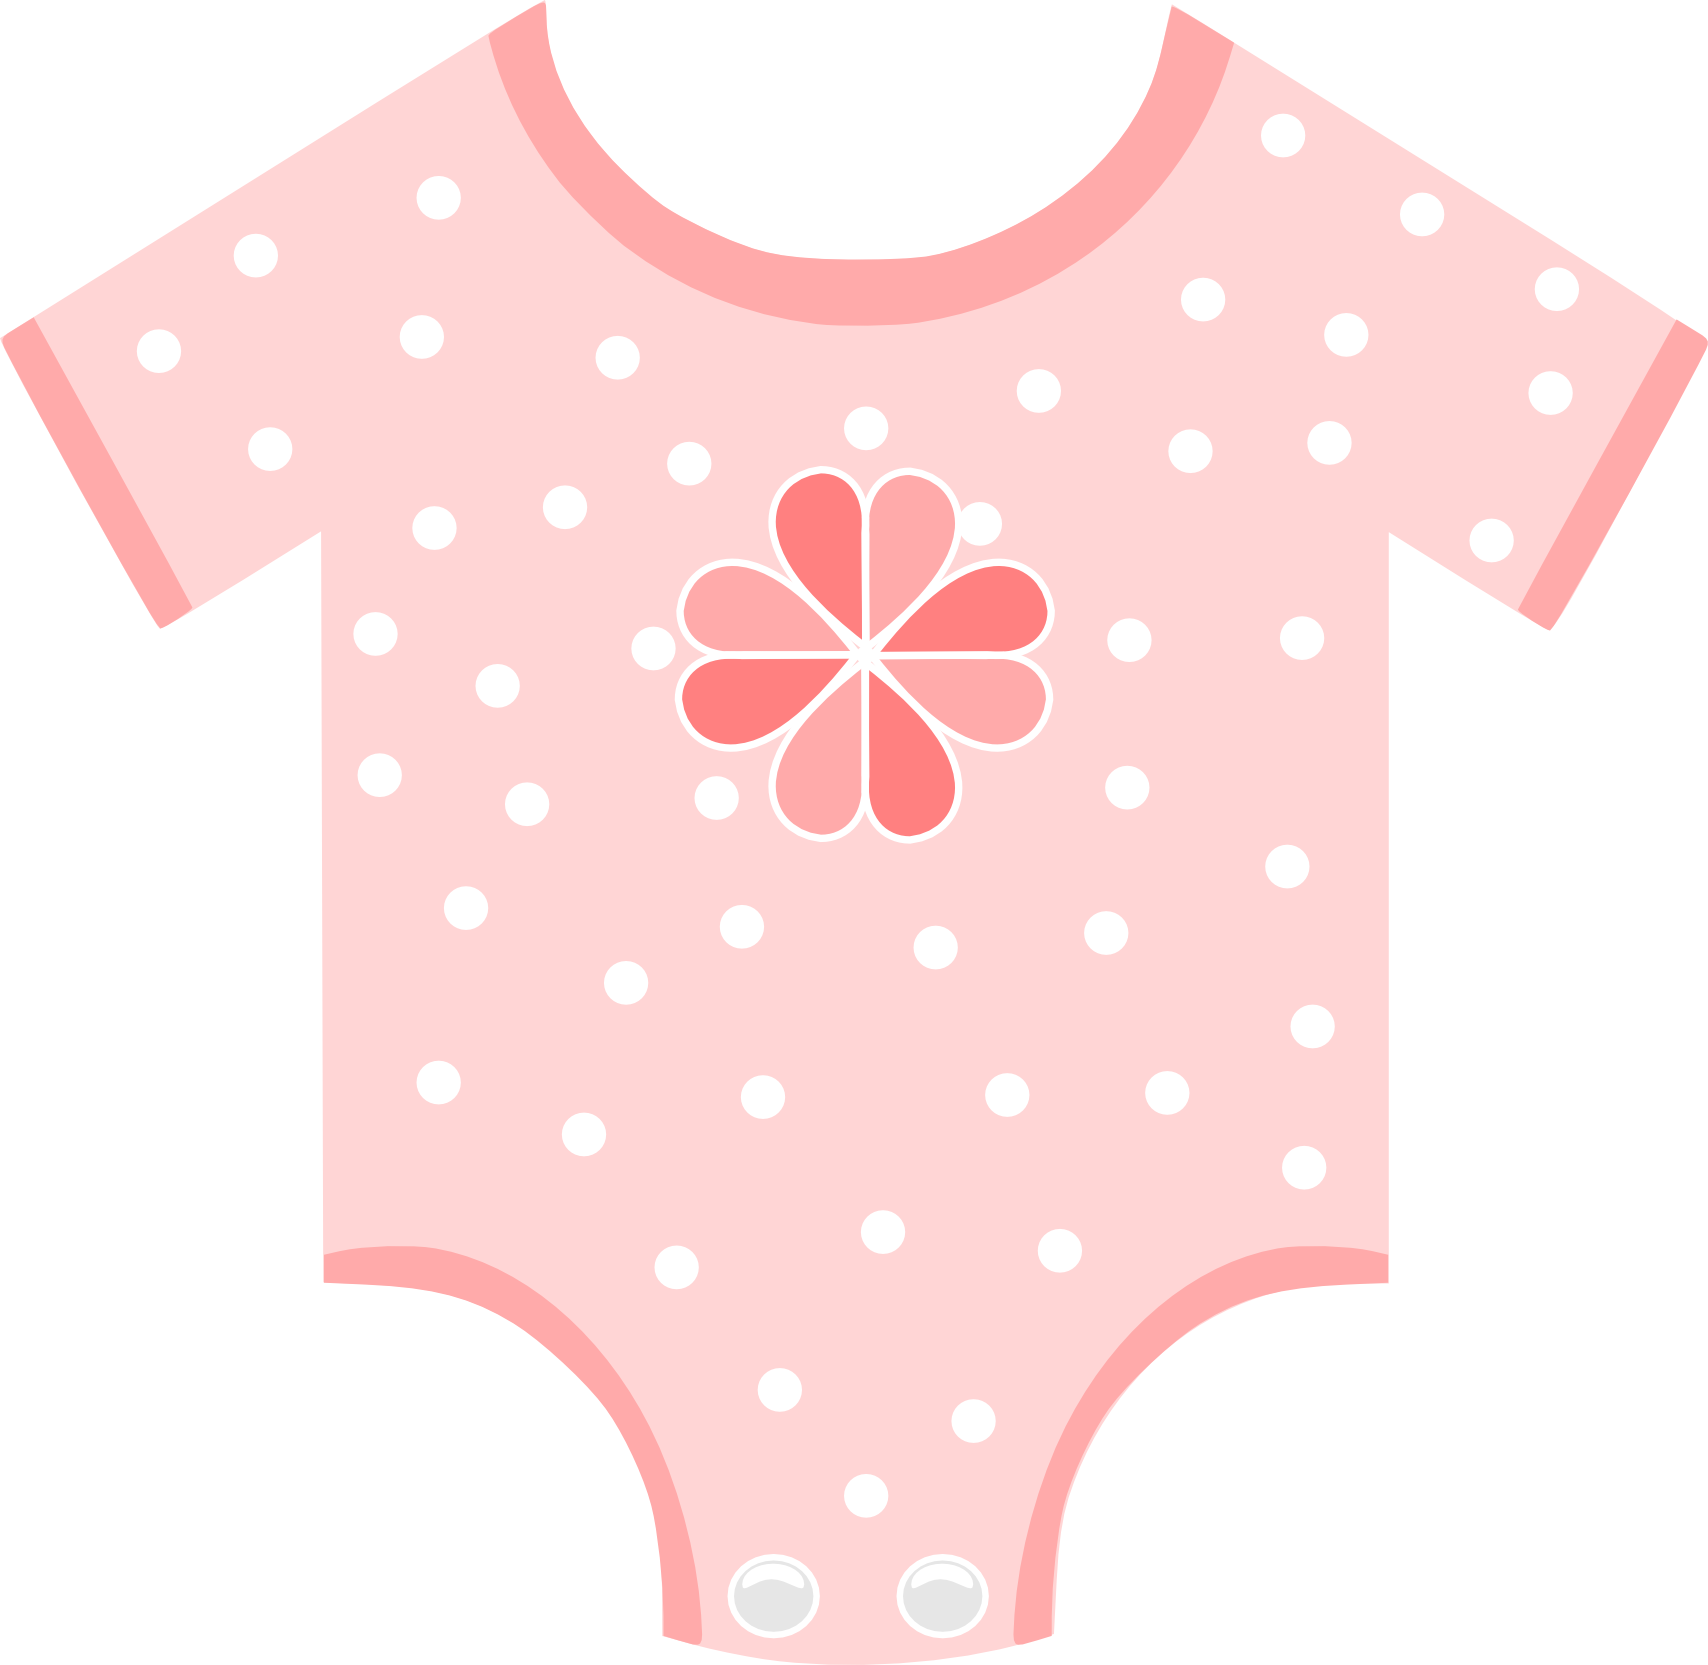 Pink Polka Dot Baby Onesie PNG